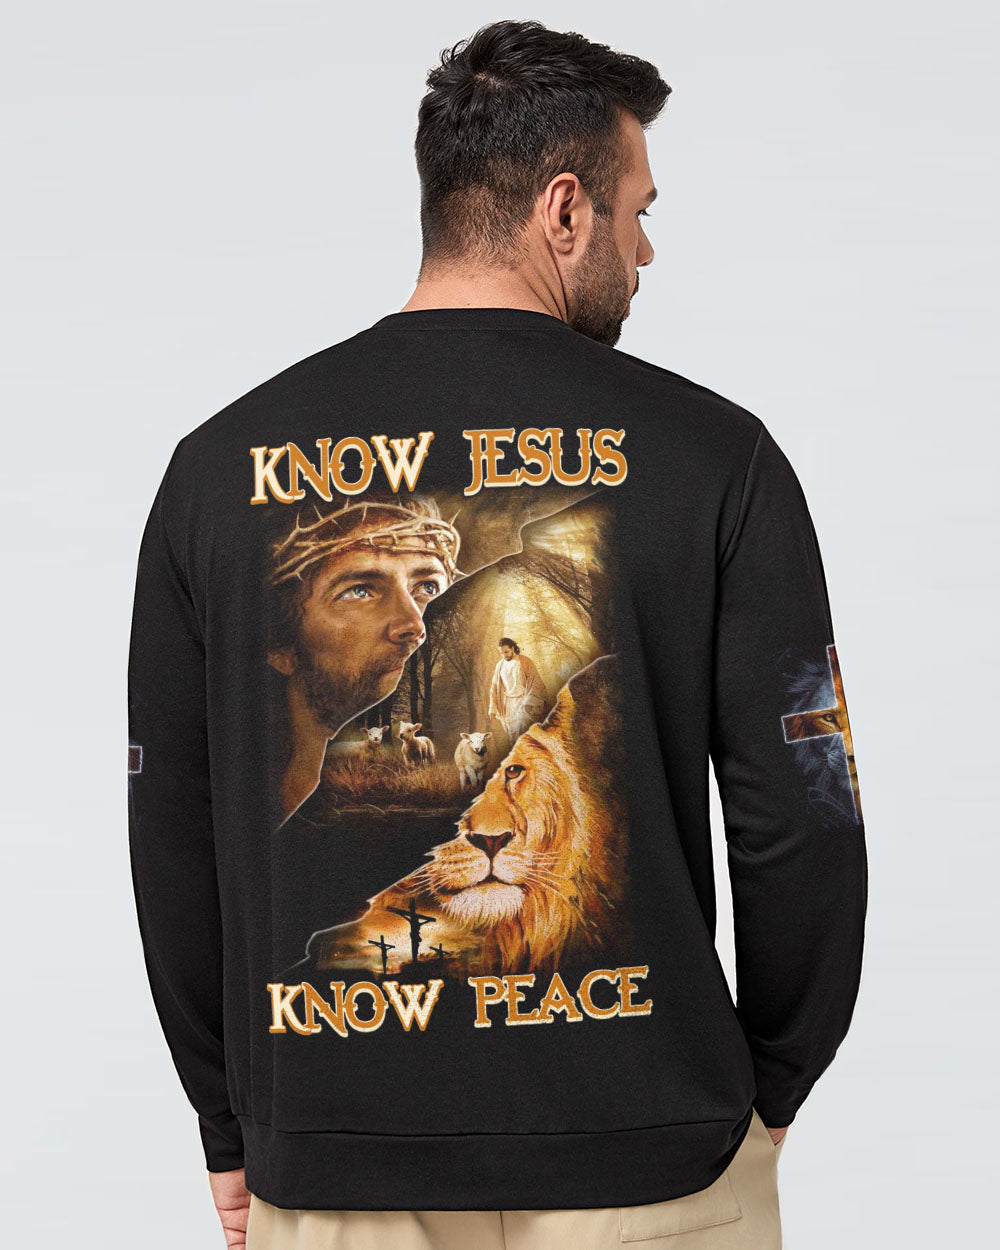 Know Jesus Know Peace Men's Christian Sweatshirt